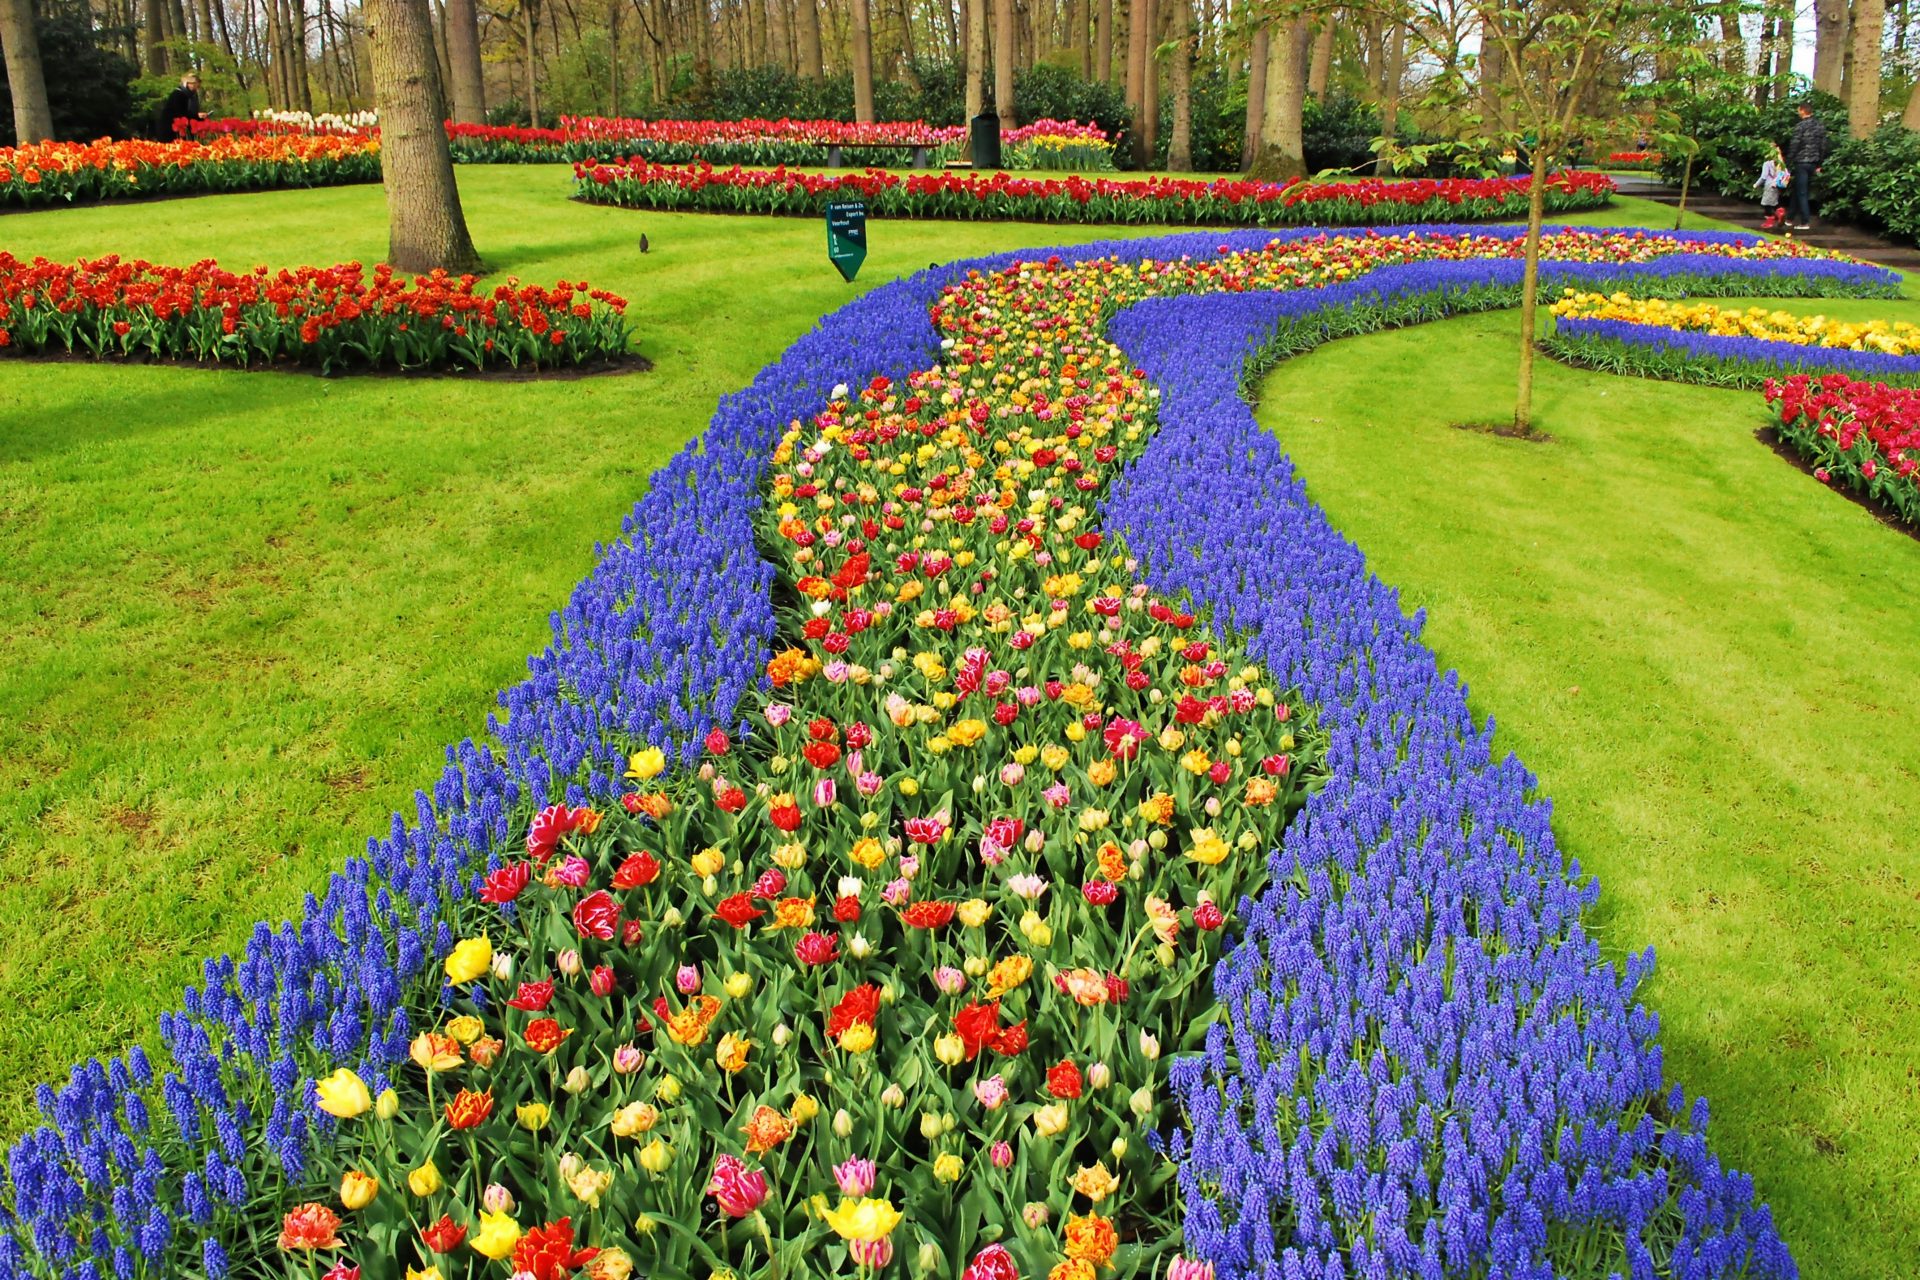 Les champs de tulipes aux Pays-Bas